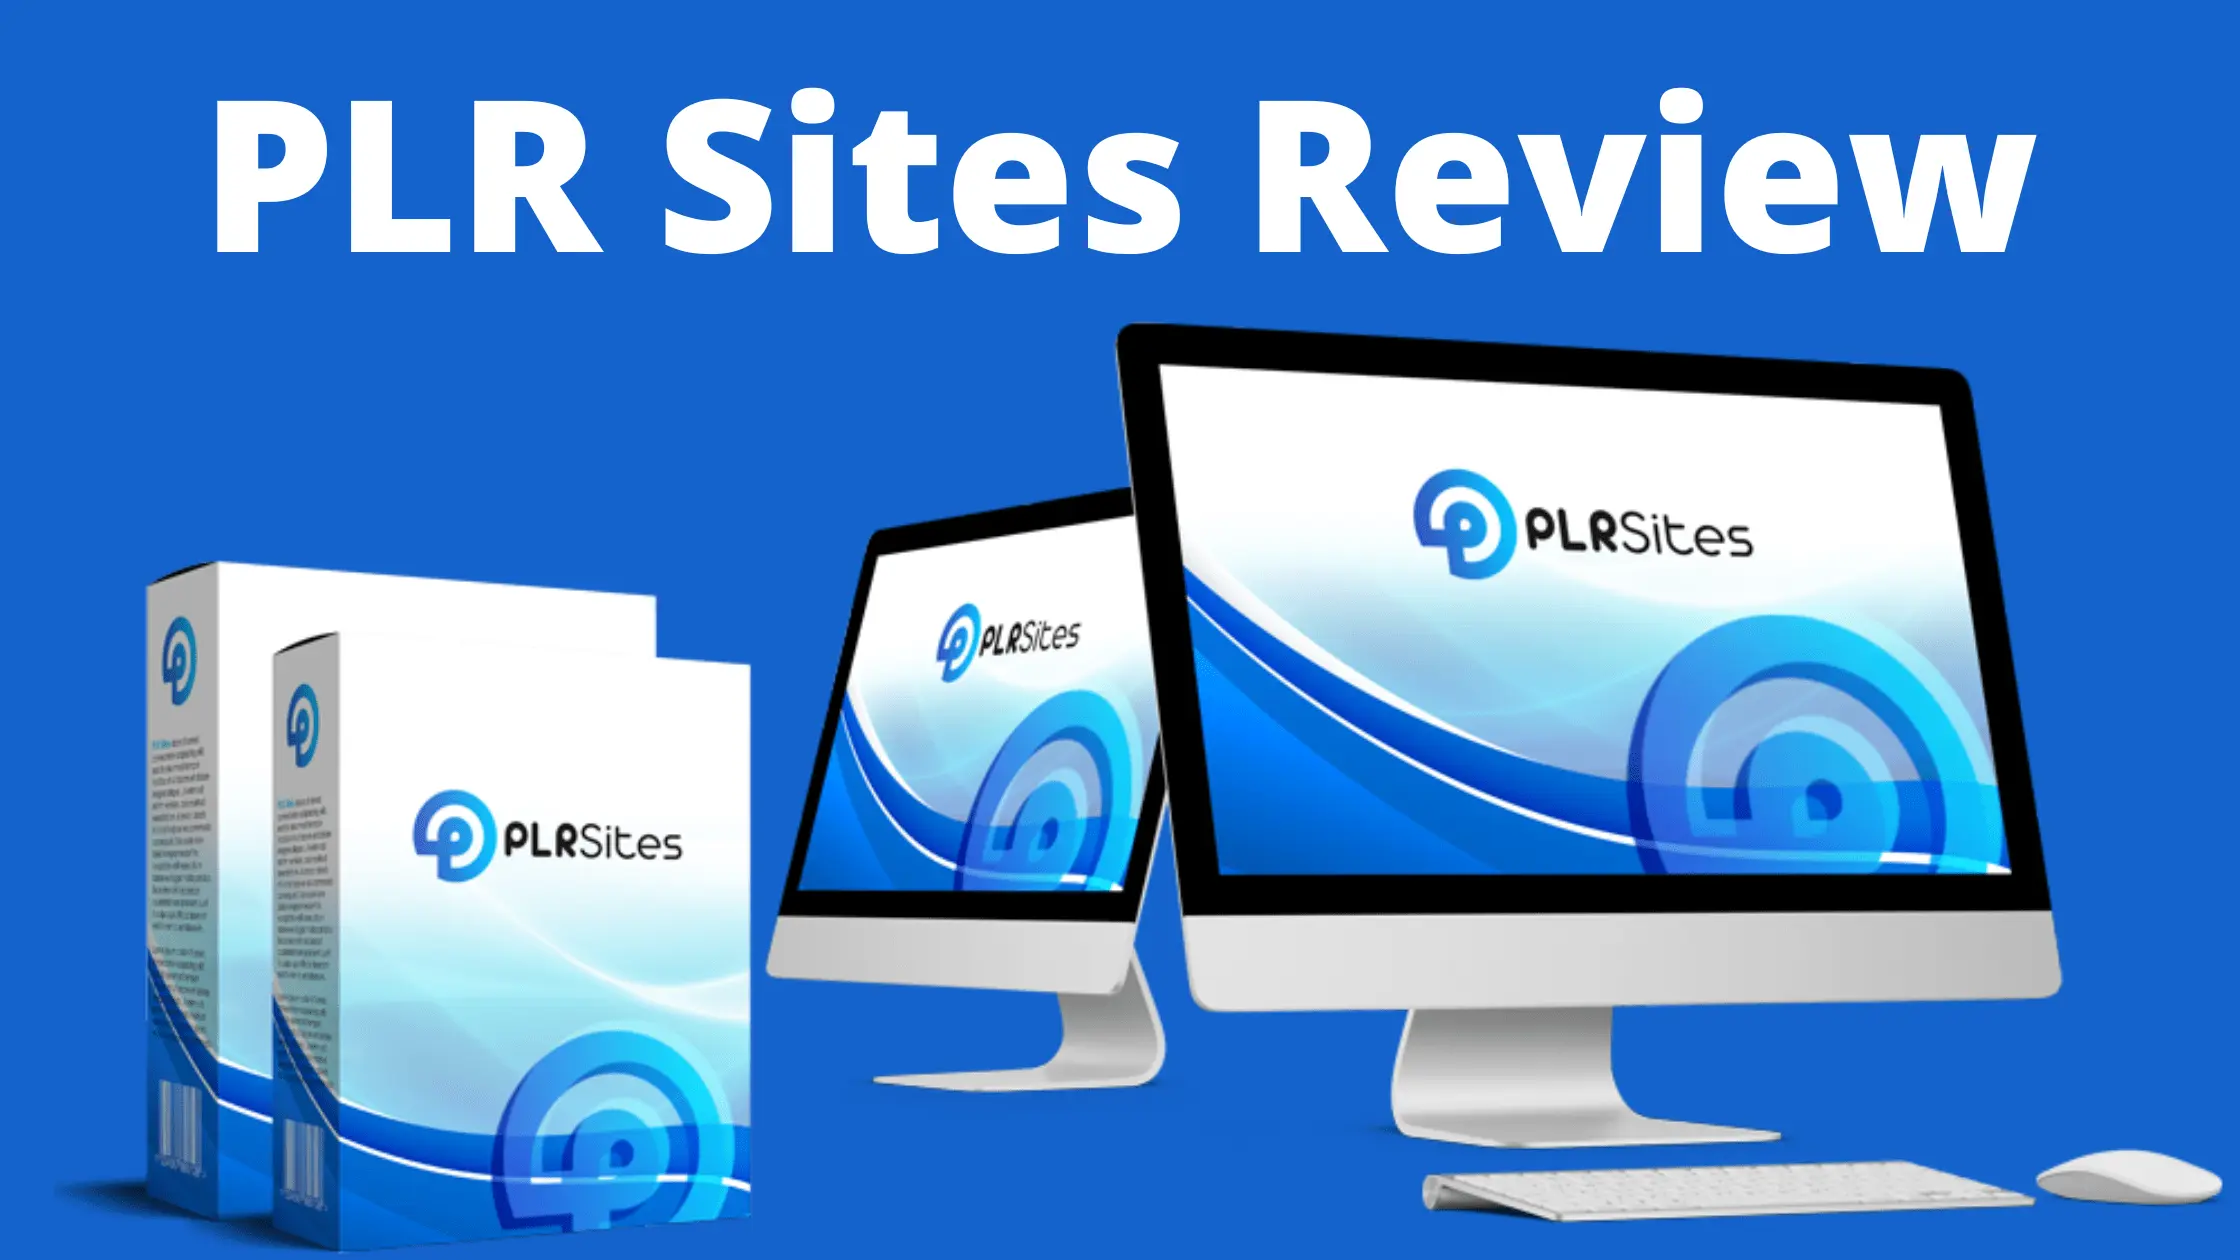 PLR Sites Review